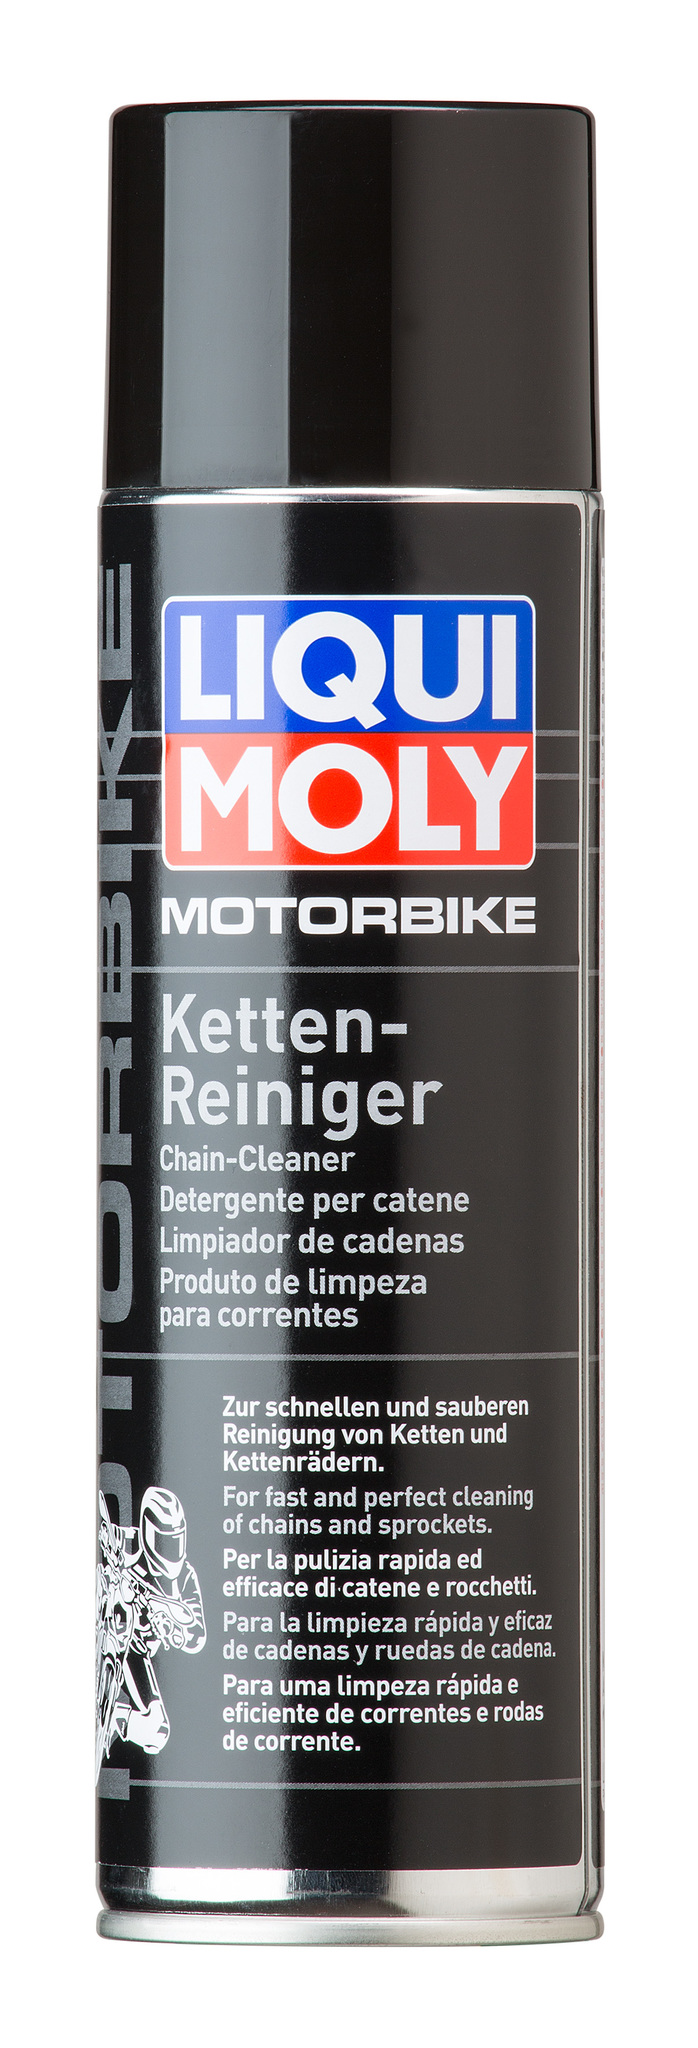 Liqui Moly Motorrad Ketten Reiniger Очиститель приводной цепи мотоцикла